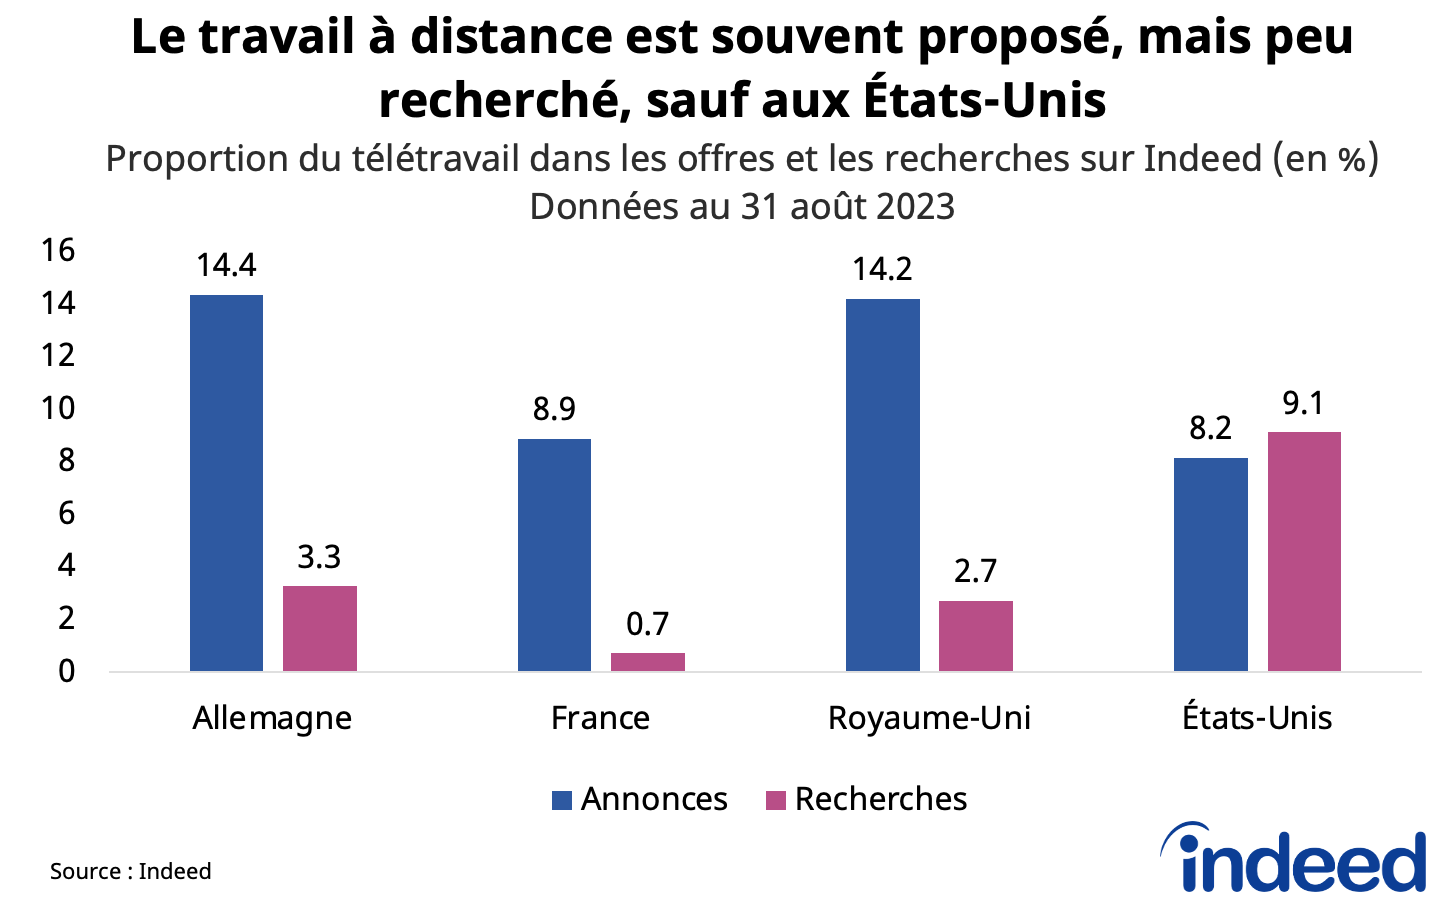 Graphique à barres intitulé « Le travail à distance est souvent proposé mais peu recherché sauf aux États-Unis », montrant le poids du télétravail dans les recherches et dans les offres en France, en Allemagne, au Royaume-Uni et aux États-Unis, au 31 août 2023